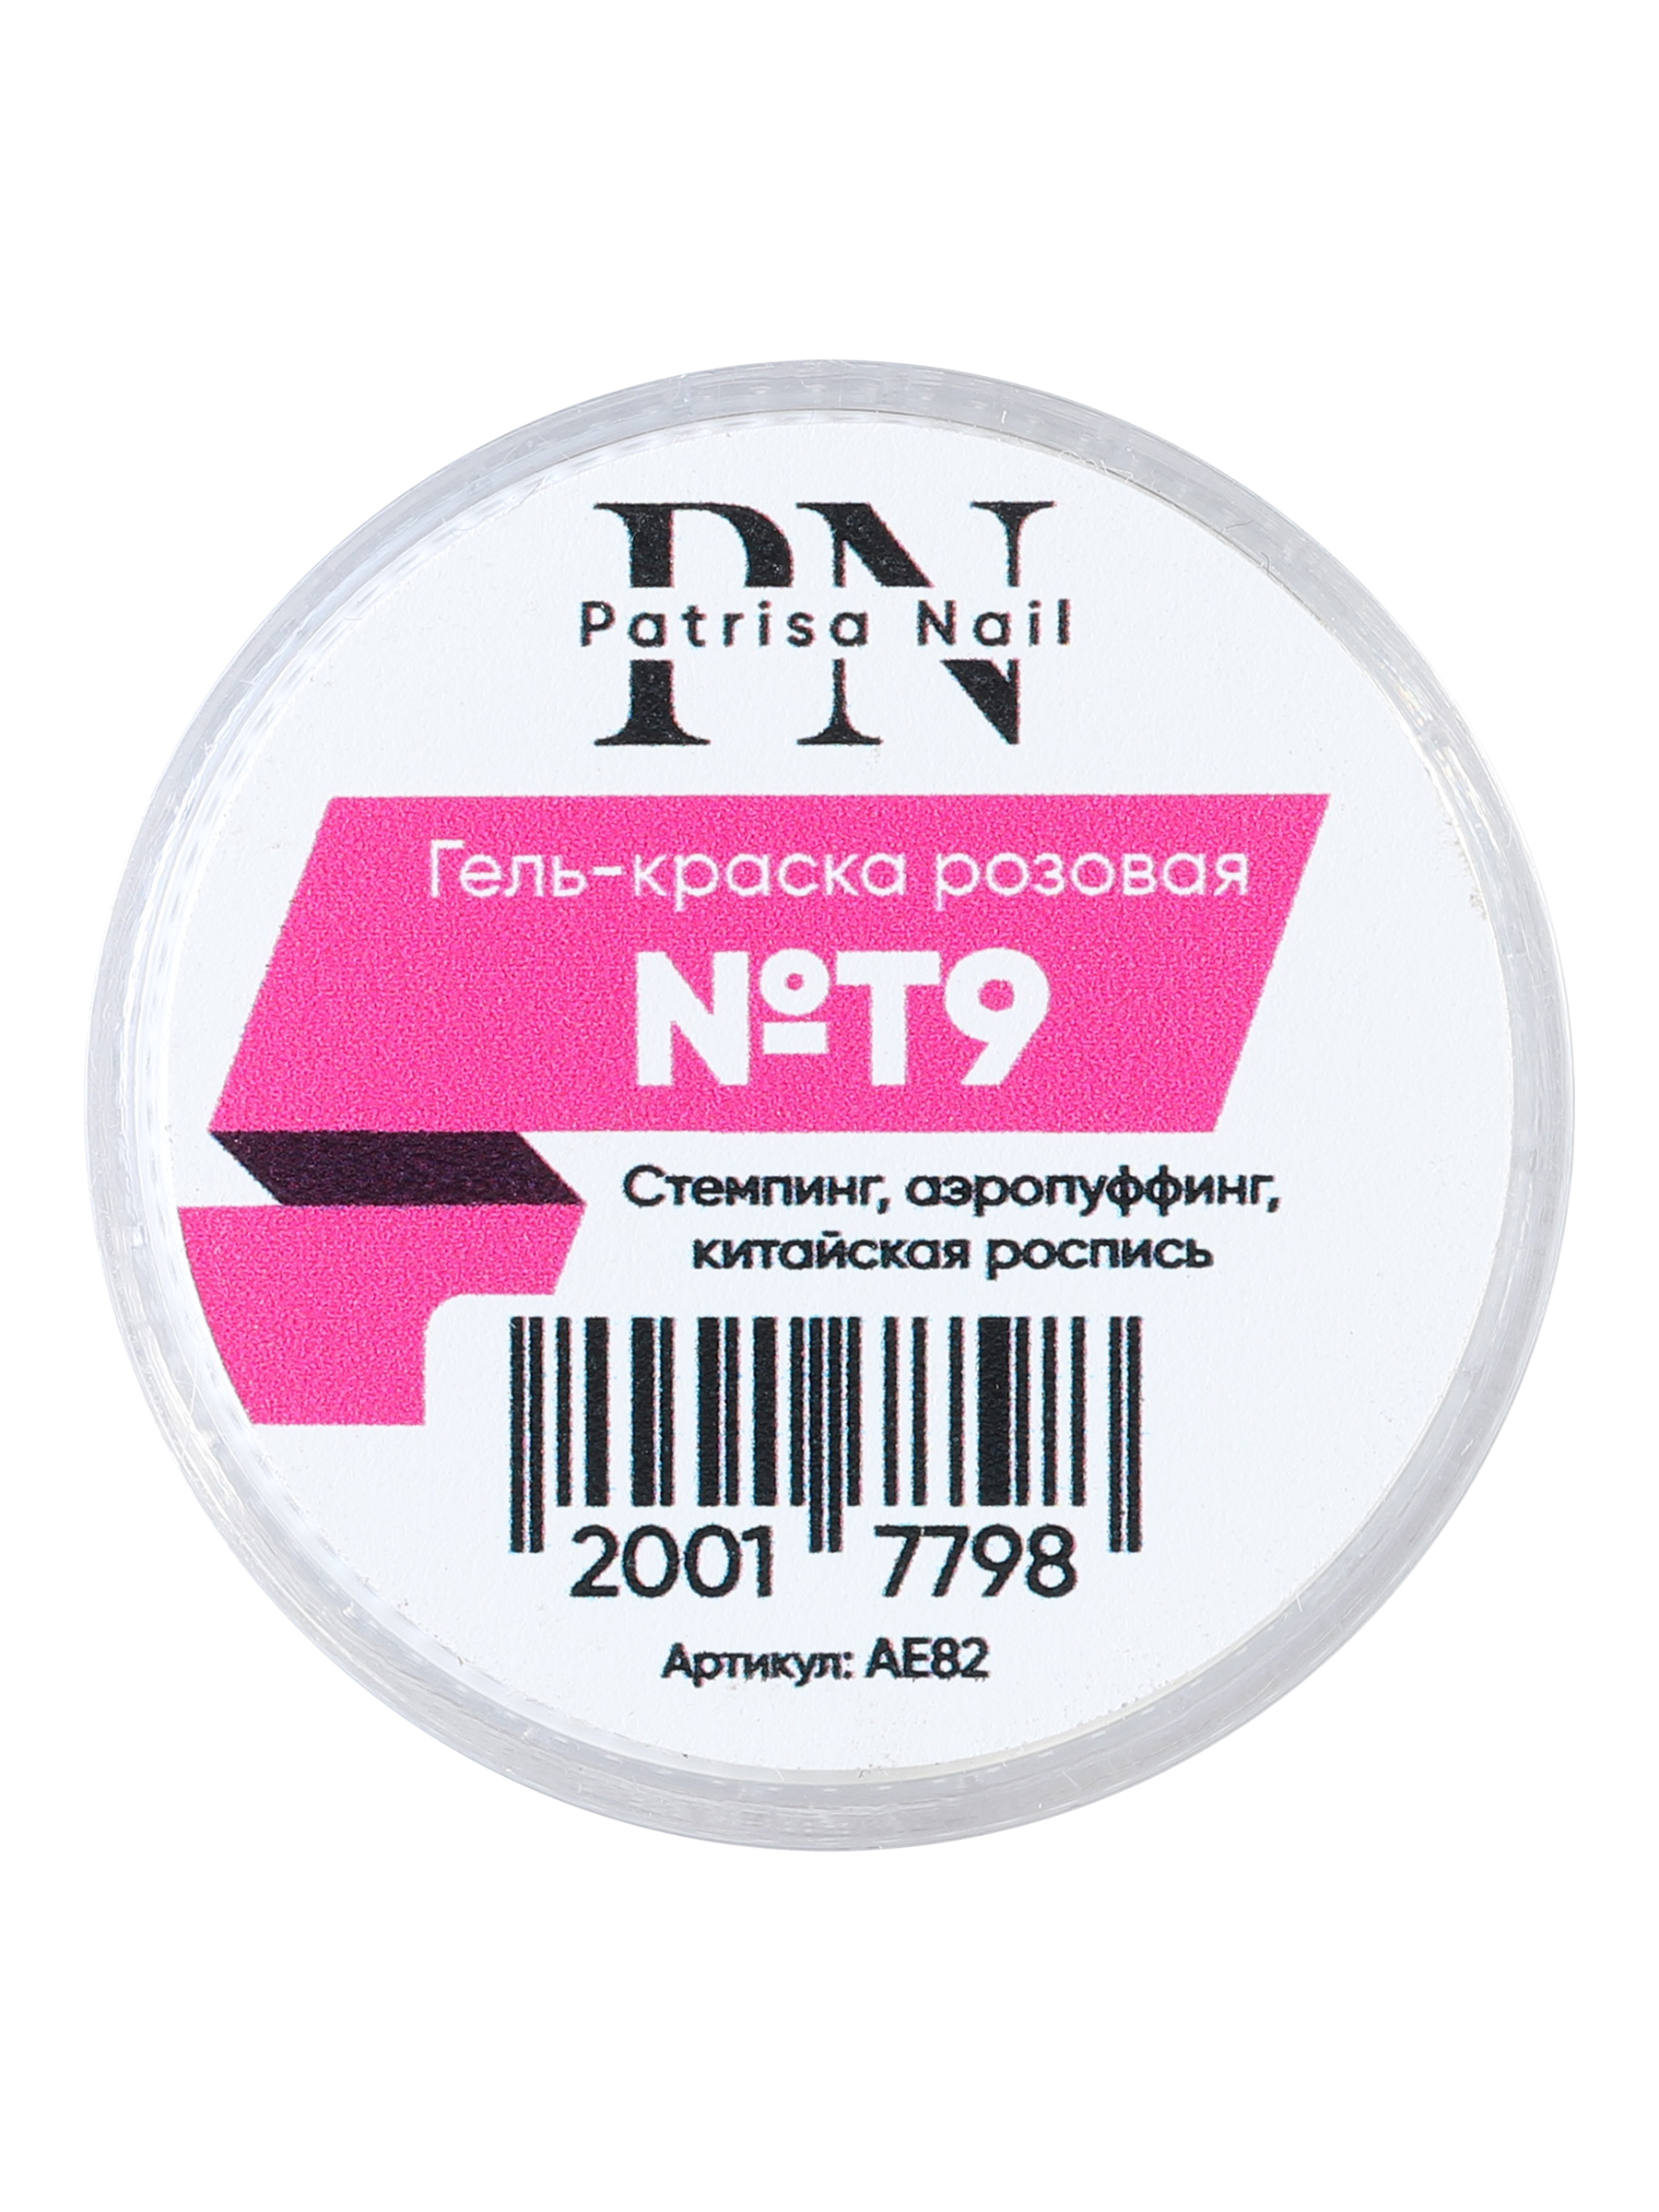 Гель-краска для стемпинга Patrisa nail №T9 для дизайна ногтей, розовая, 5 г